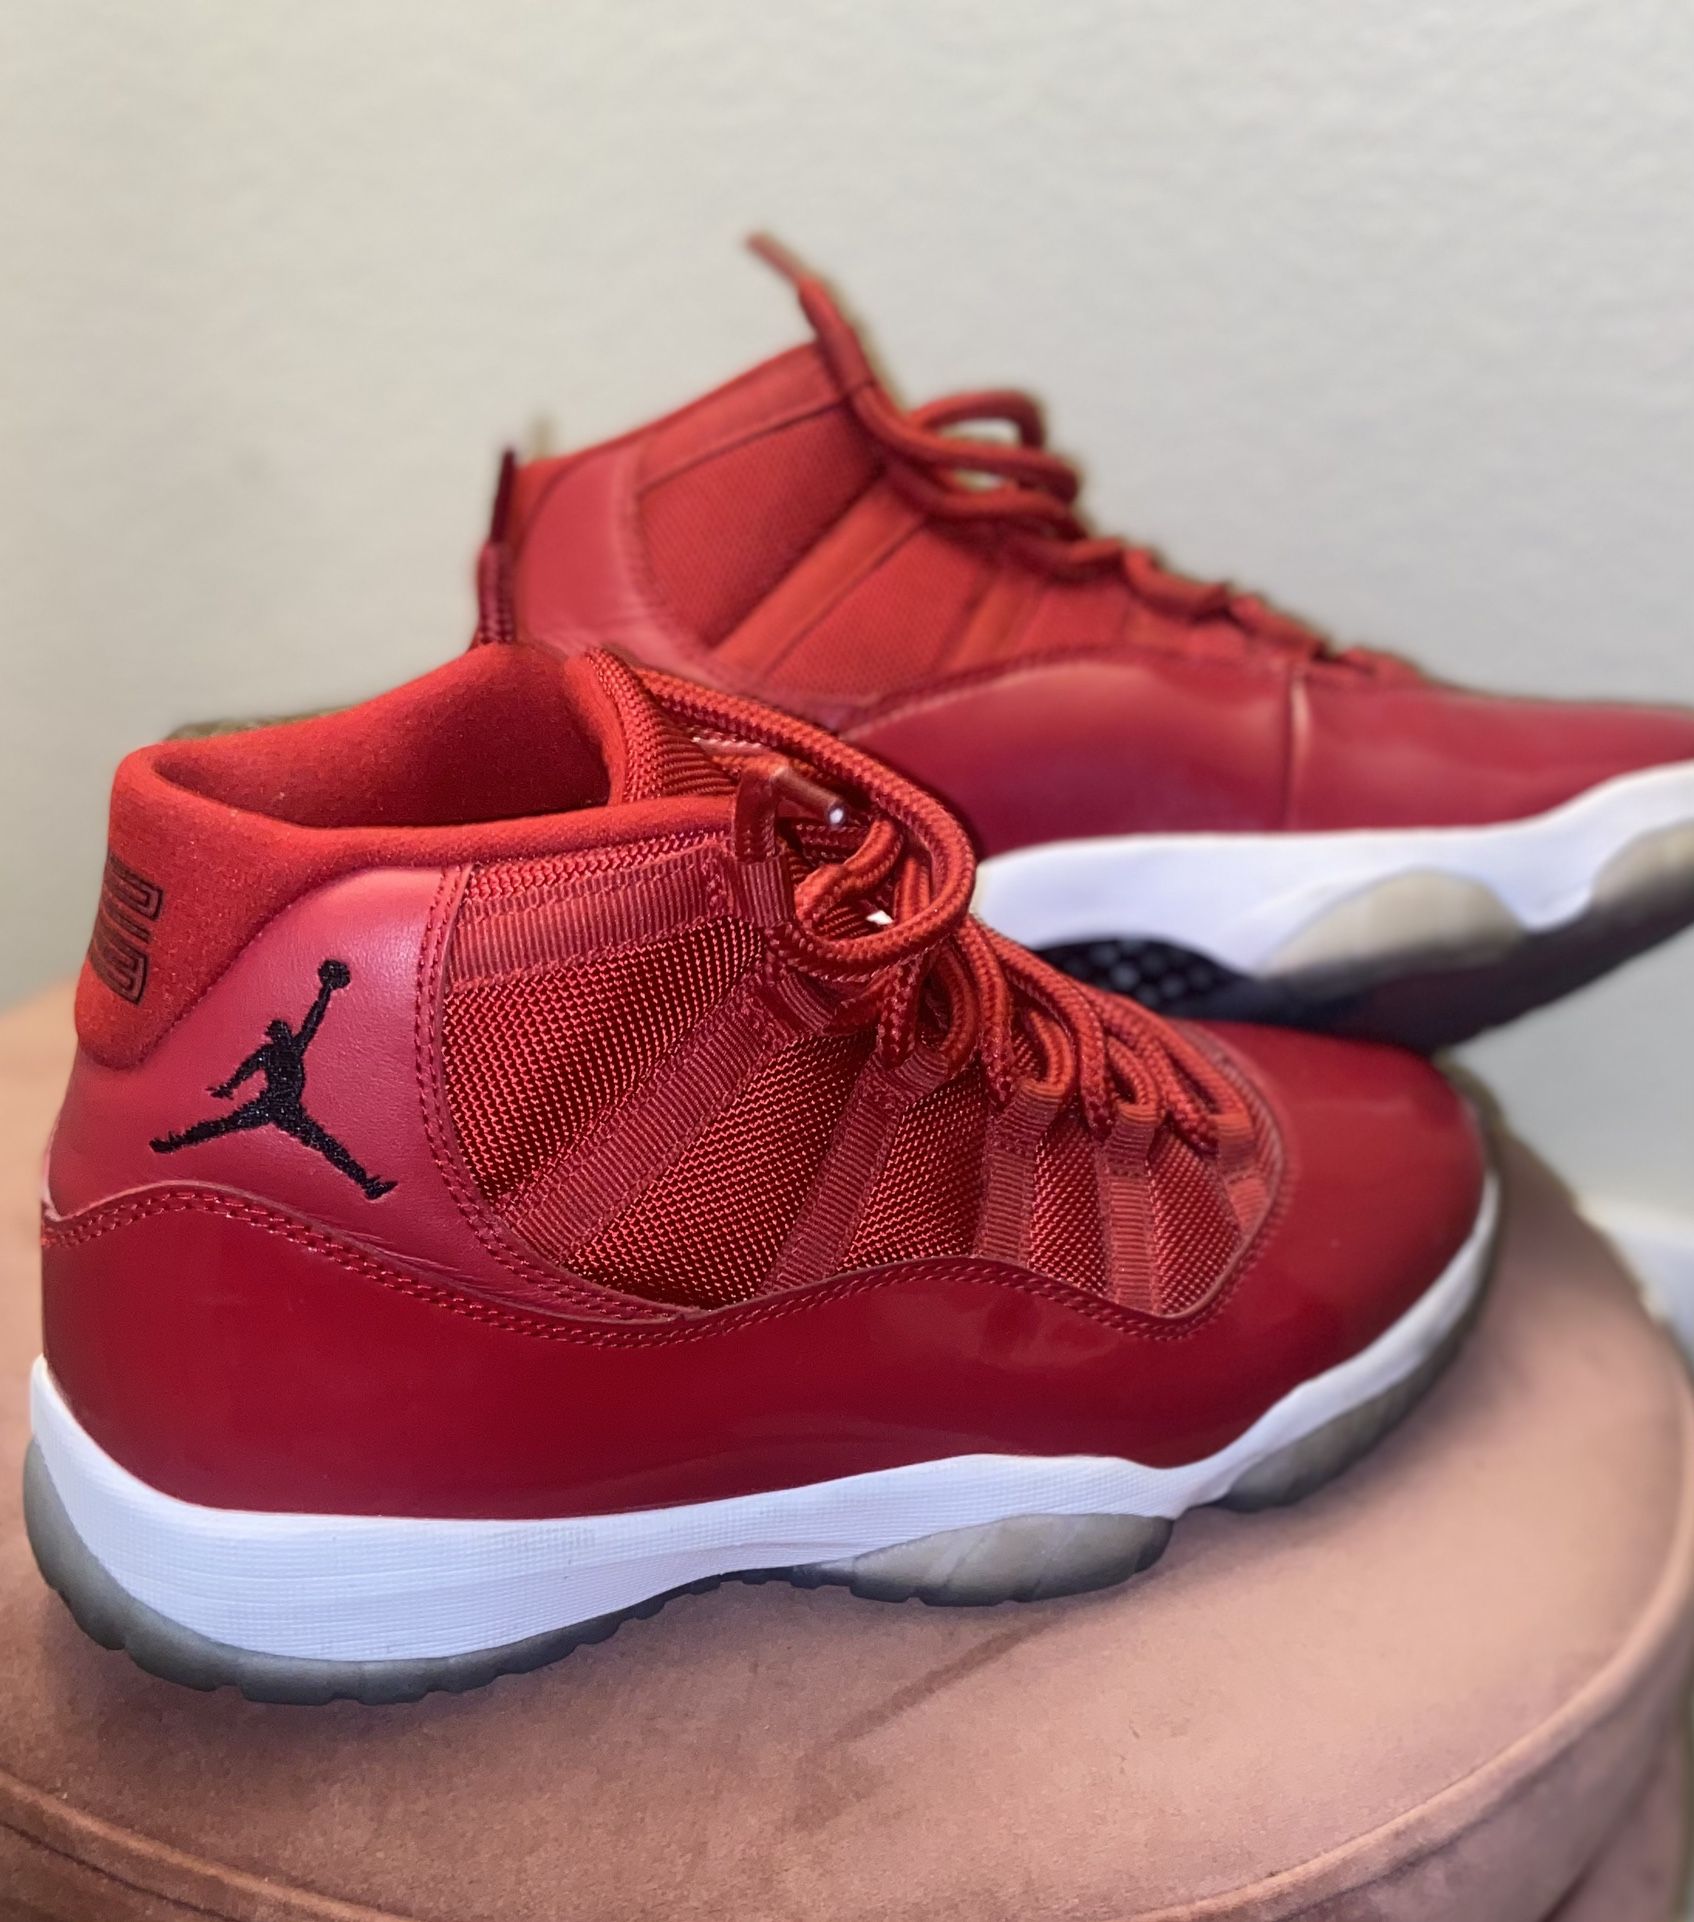 Air Jordan 11 retro red men’s size 10